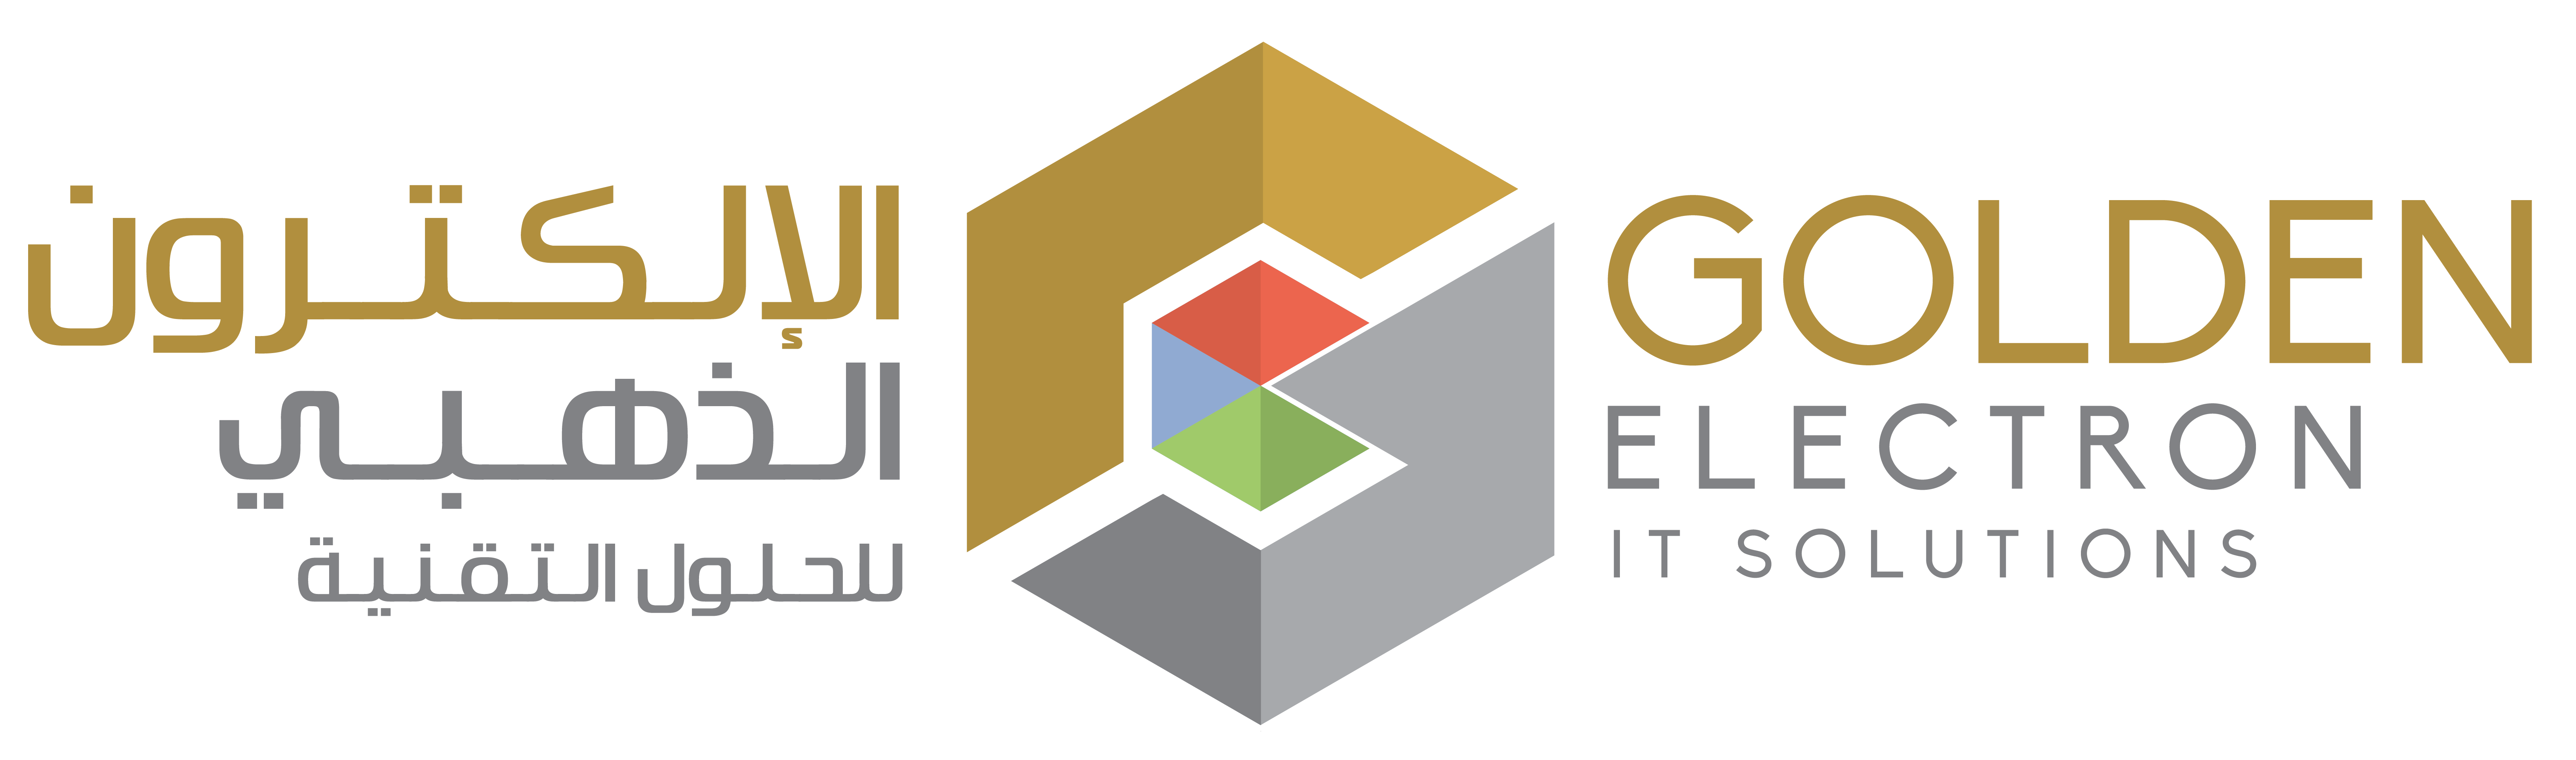 Golden Electron logo